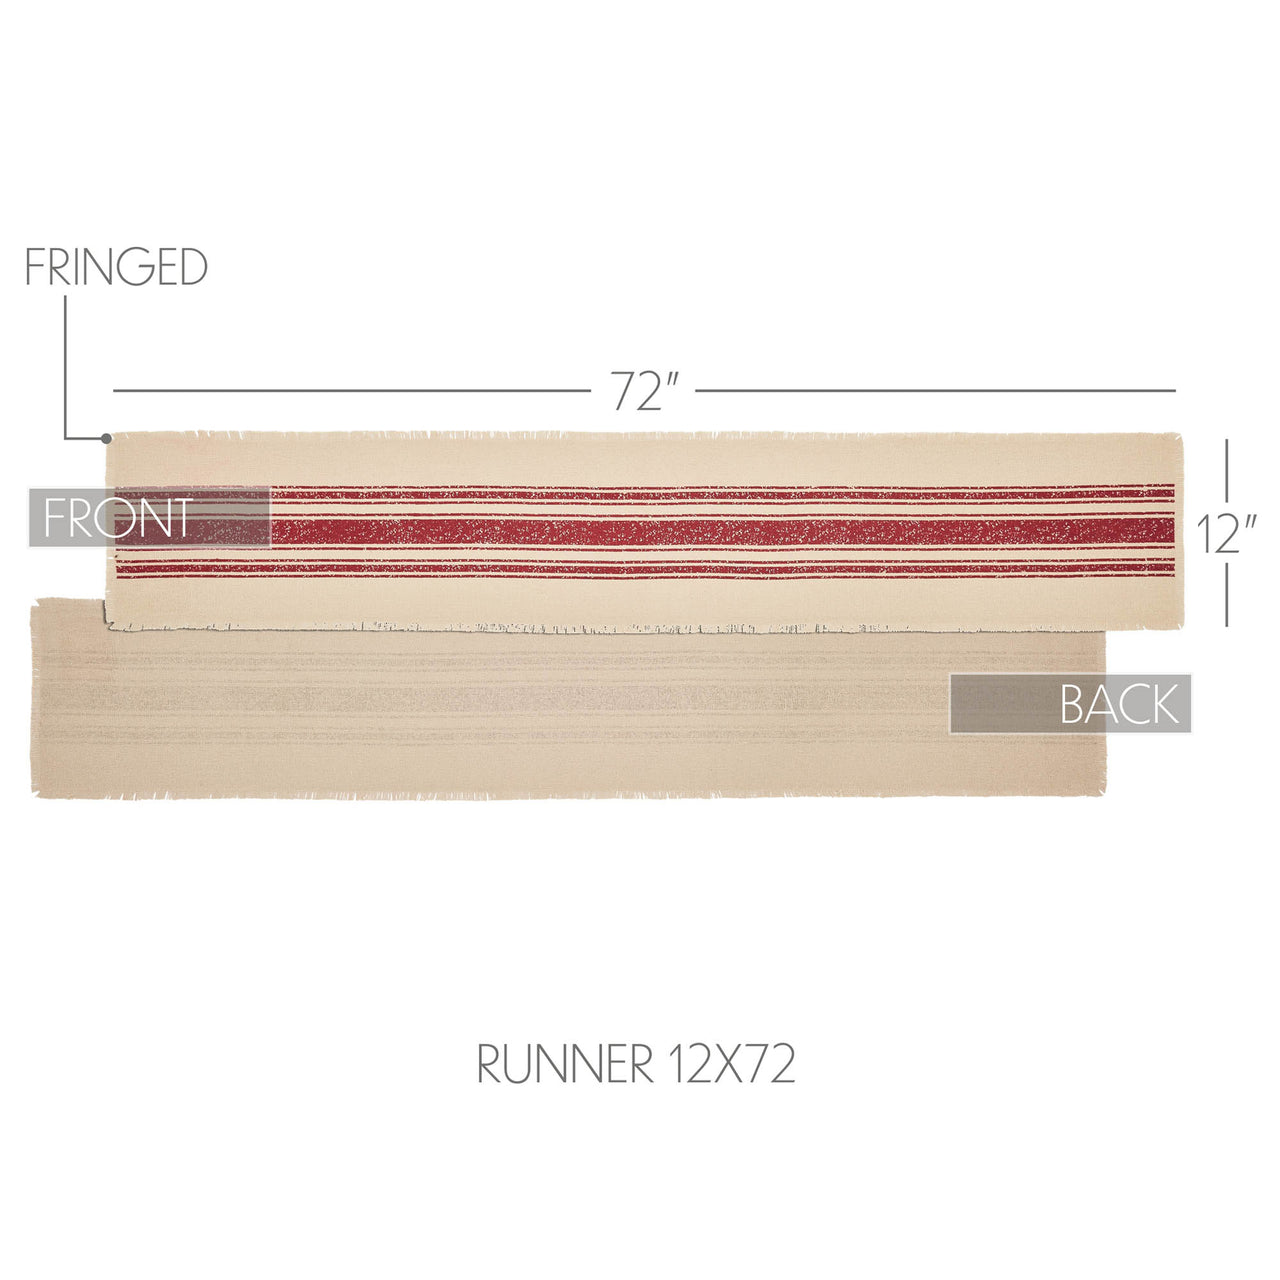 Yuletide Burlap Stripe Red Table Runner 13x72 VHC Brands